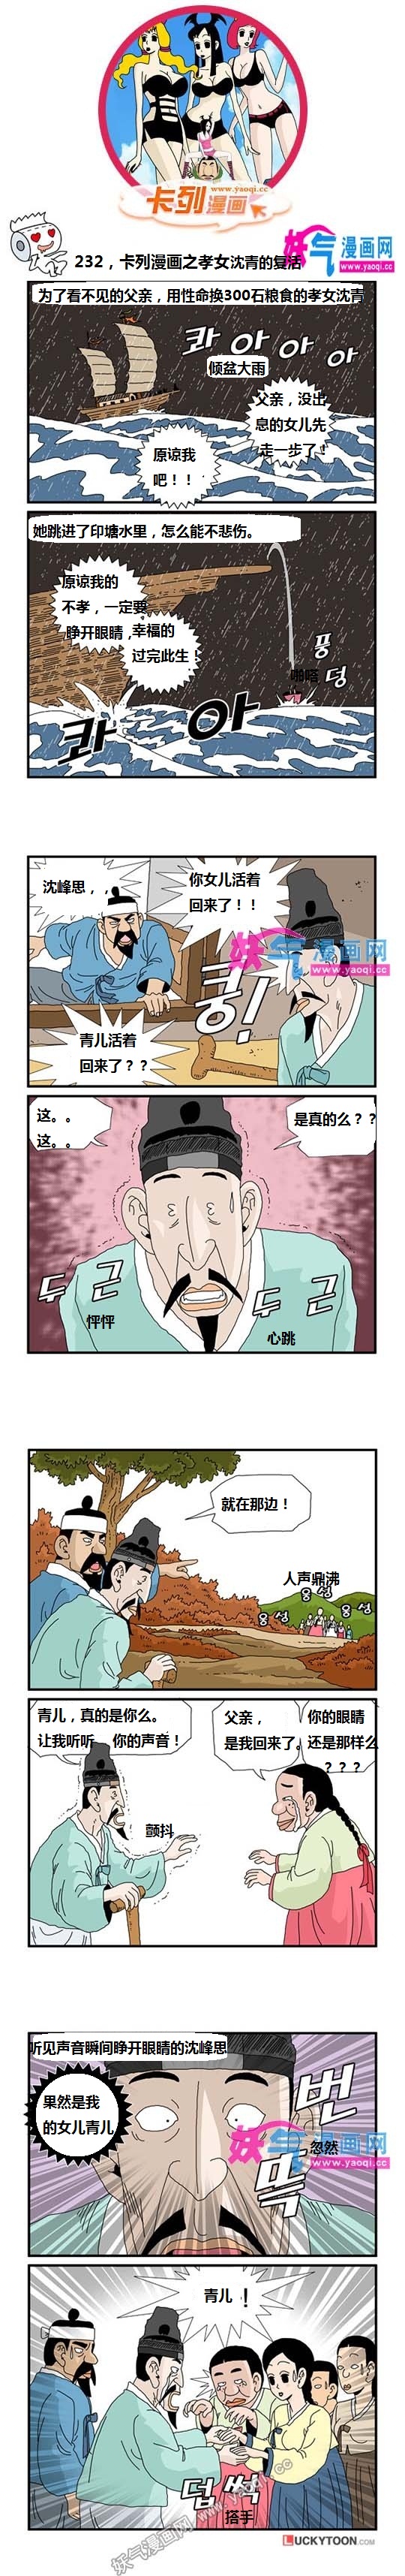 看漫卡列漫画:孝女沈青的复活